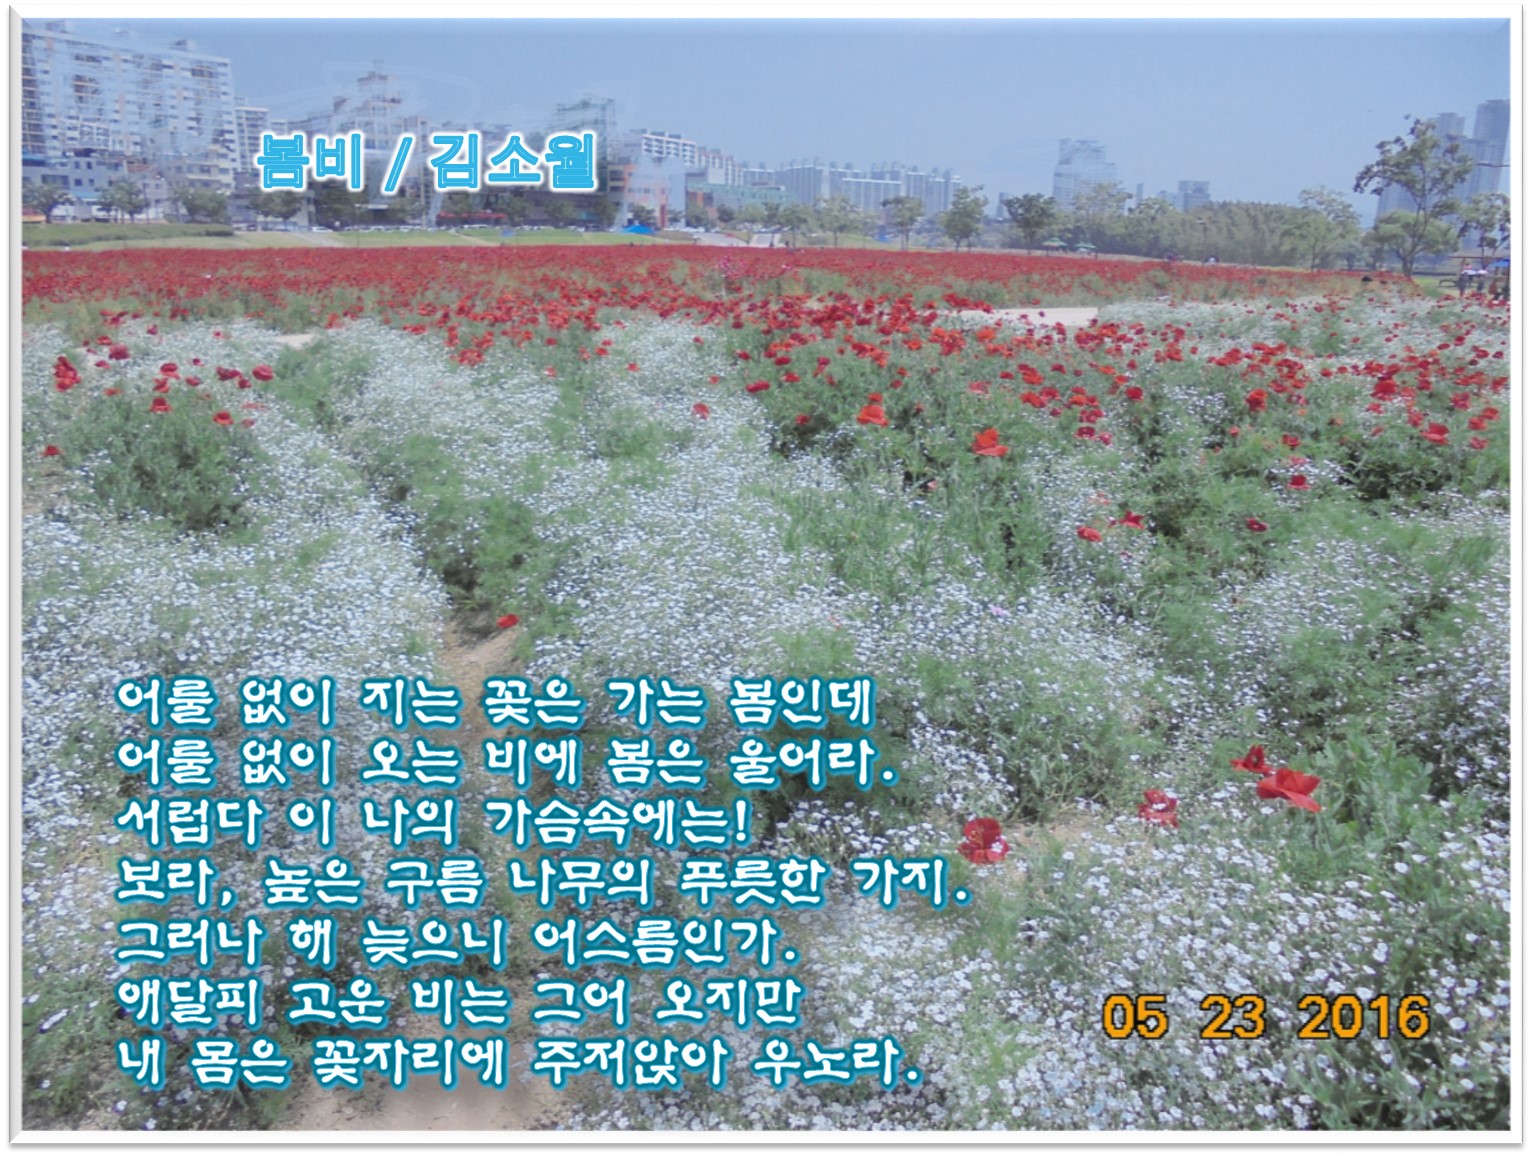 이 글은 파워포인트에서 만든 이미지입니다. 봄비/ 김소월